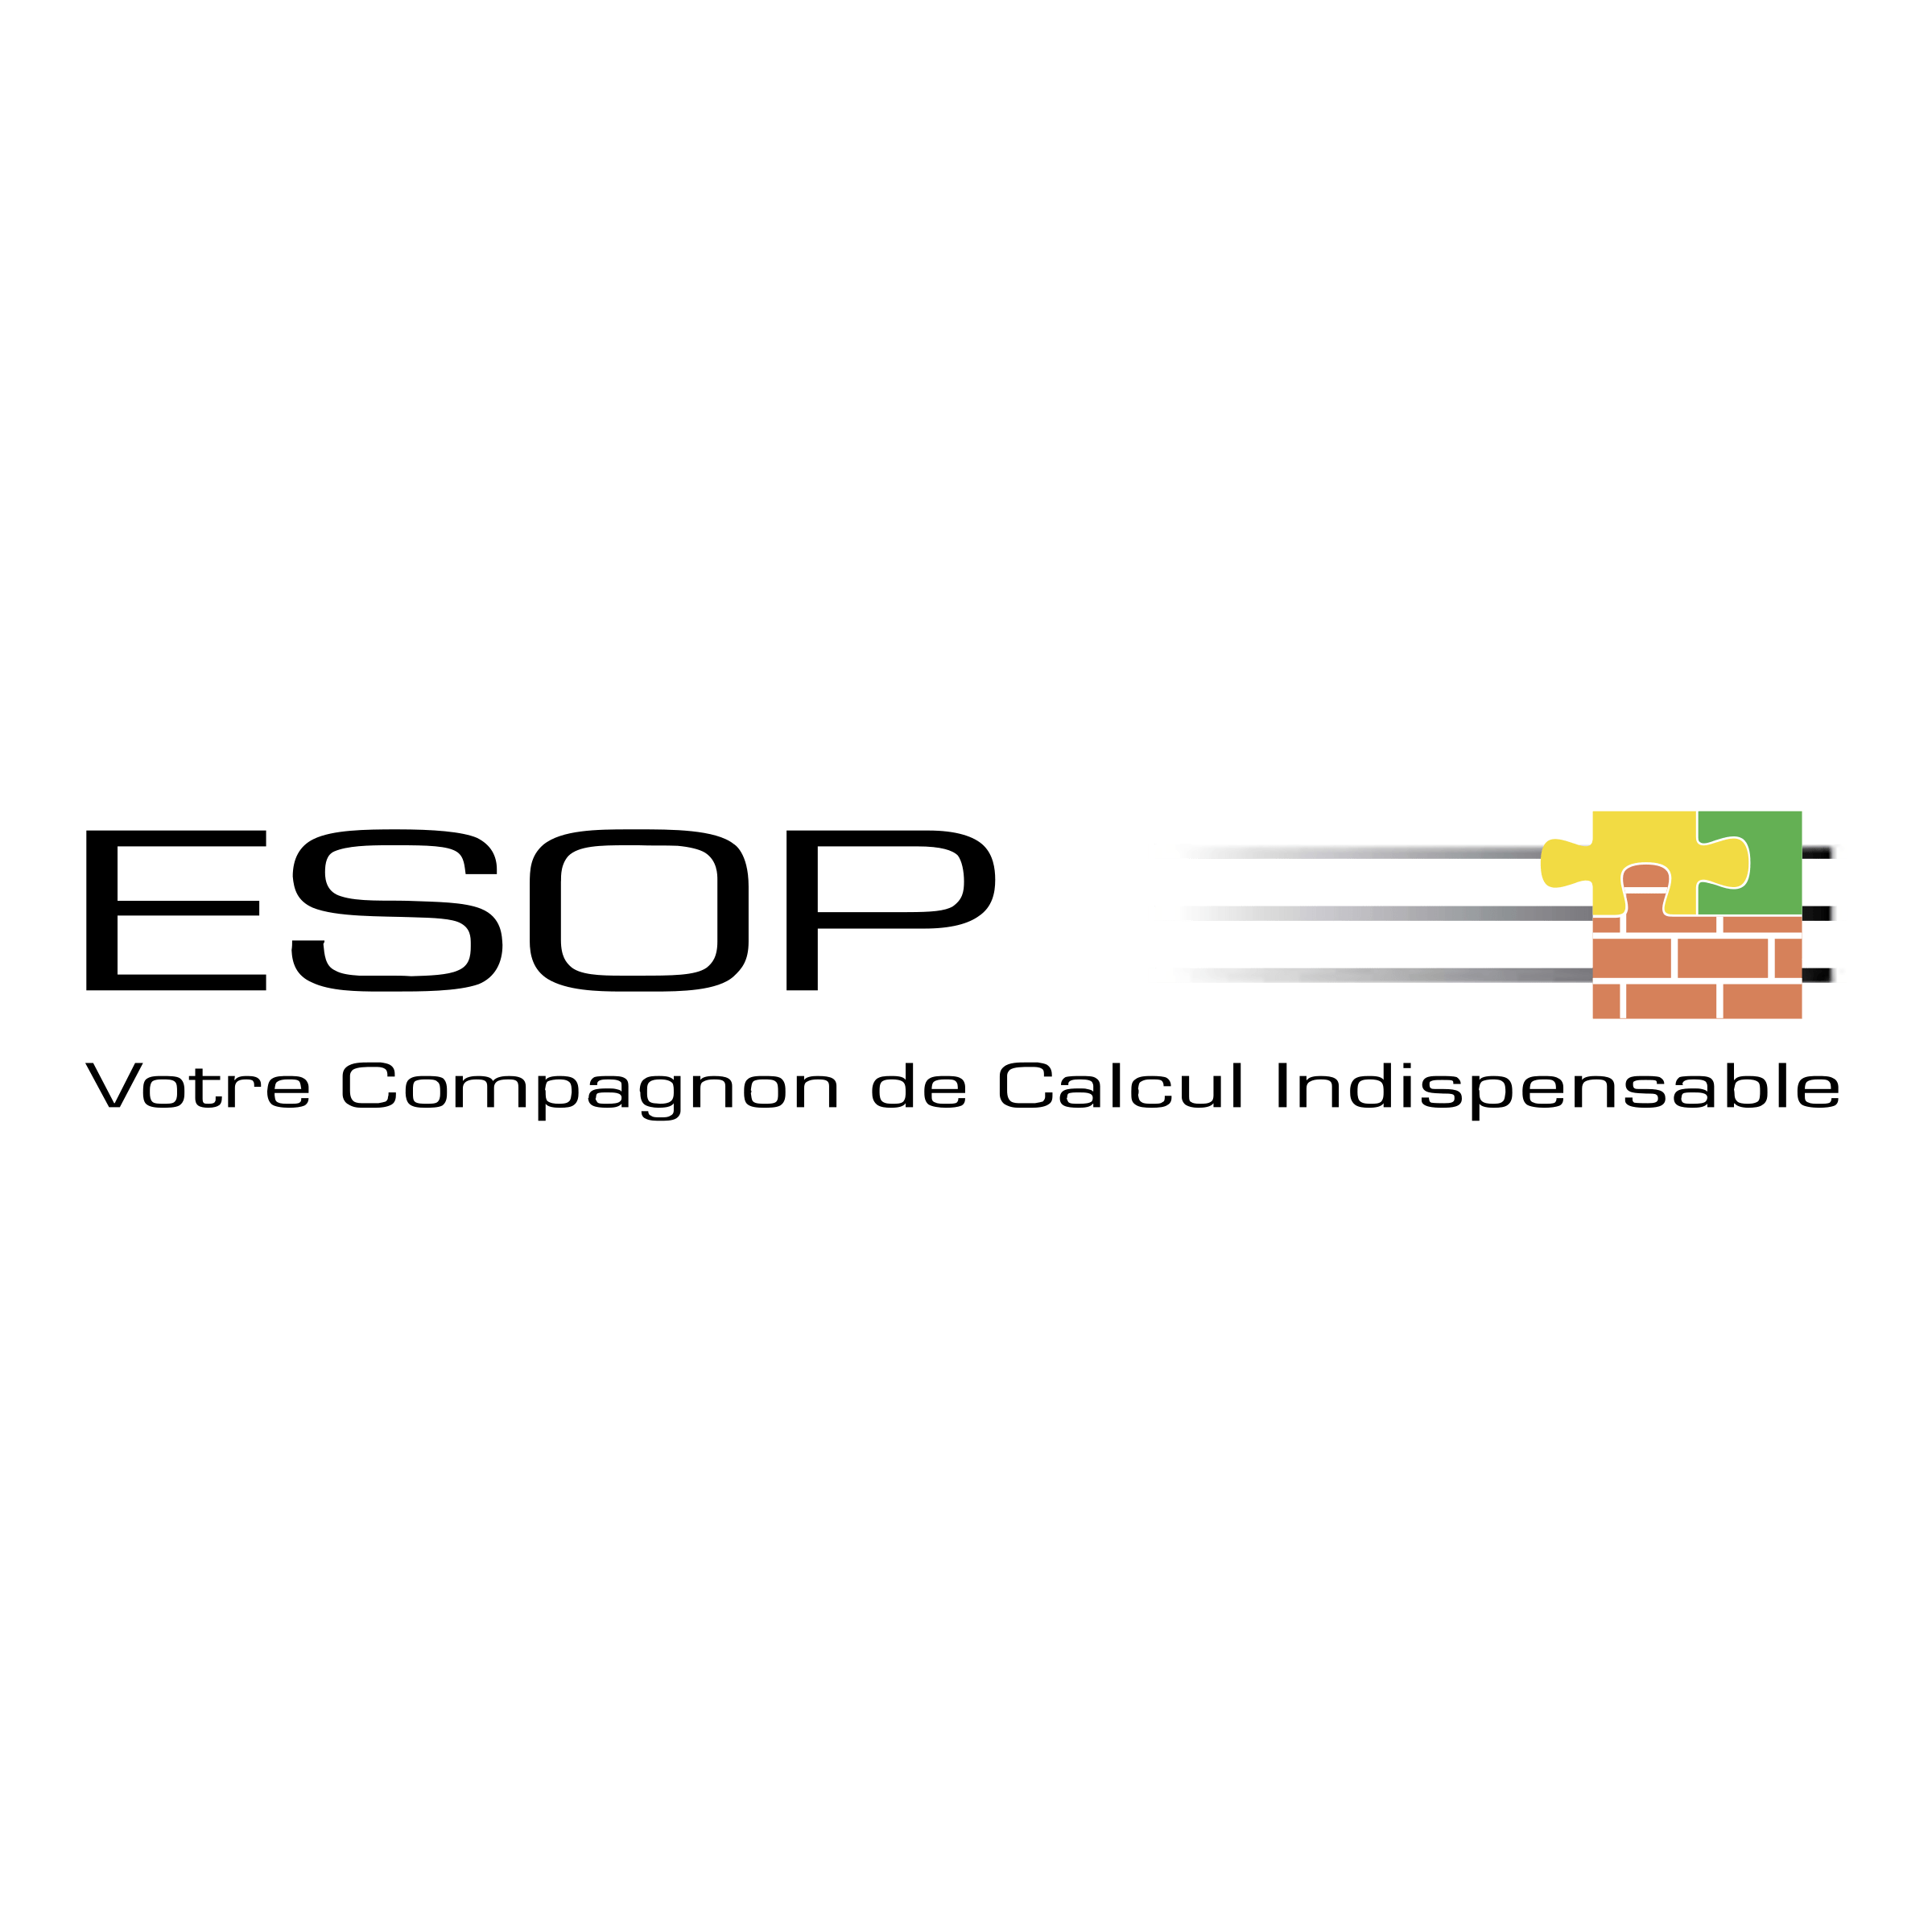 ESOP Logo - ESOP Logo PNG Transparent & SVG Vector - Freebie Supply